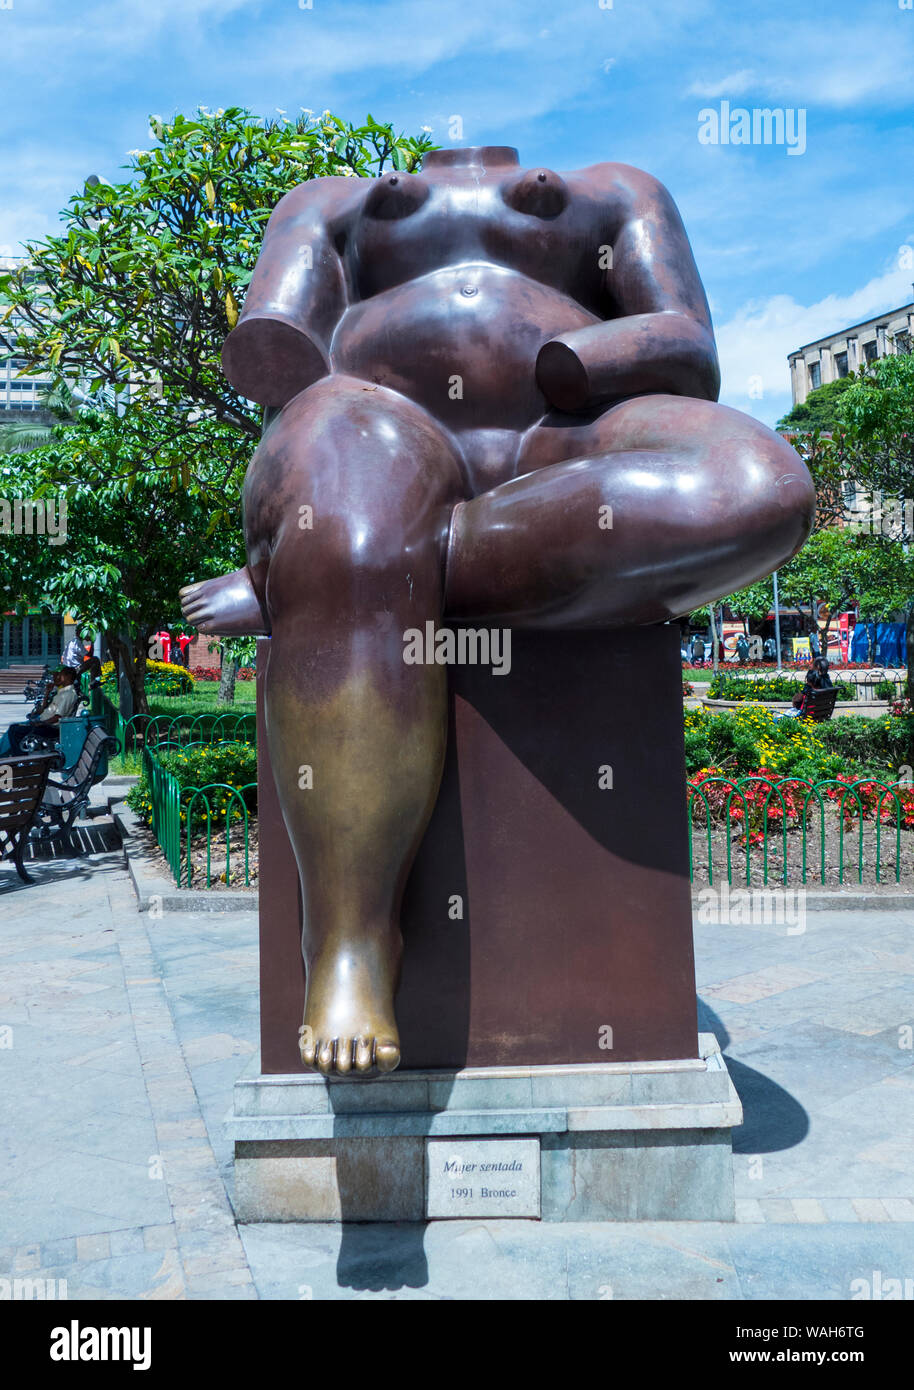 Statue de Botero Mujer Sentada (femme assise) dans la région de Plaza Botero à Medellin en Colombie. Banque D'Images